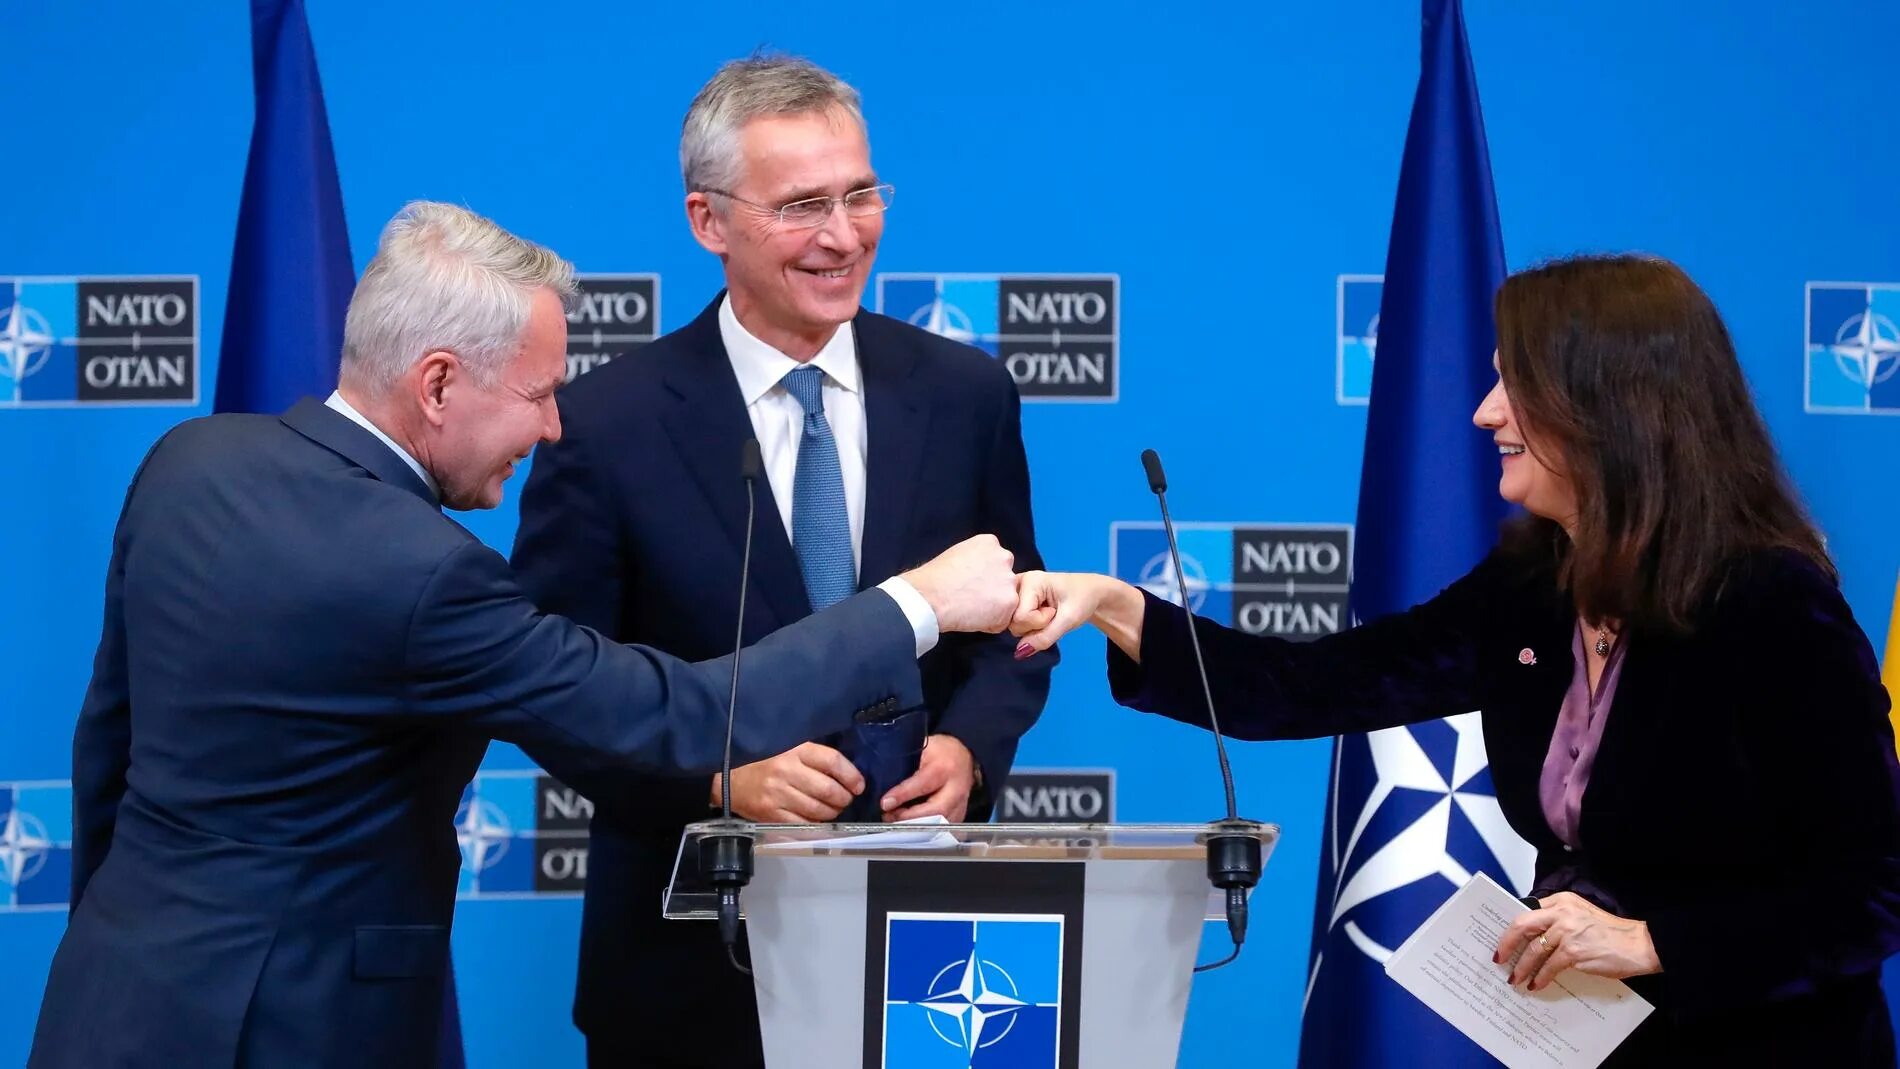 Вступление швеции и финляндии в нато. Финляндия и Швеция в НАТО. Вступление Швеции в НАТО. Швеция и Финляндия вступление в НАТО. Финляндия вступила в НАТО.